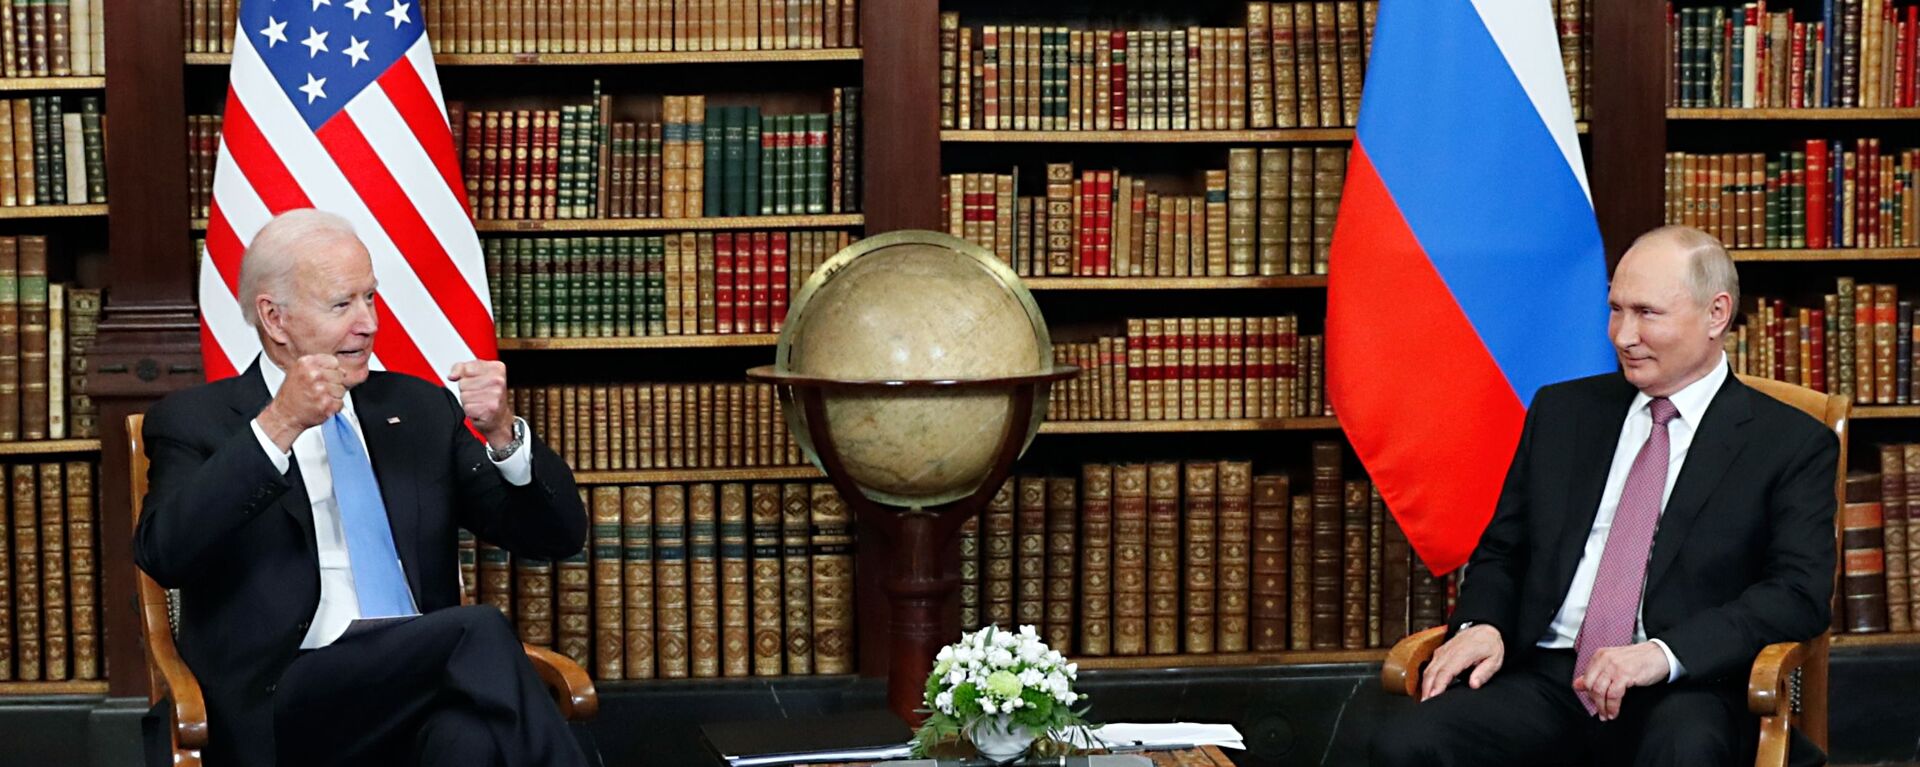 16 يونيو/ حزيران 2021 - صورة تجمع الرئيس الروسي  فلاديمير بوتين والرئيس الأمريكي جو بايدن في  فيلا لا غرانج في جنيف السويسرية. - سبوتنيك عربي, 1920, 19.10.2022